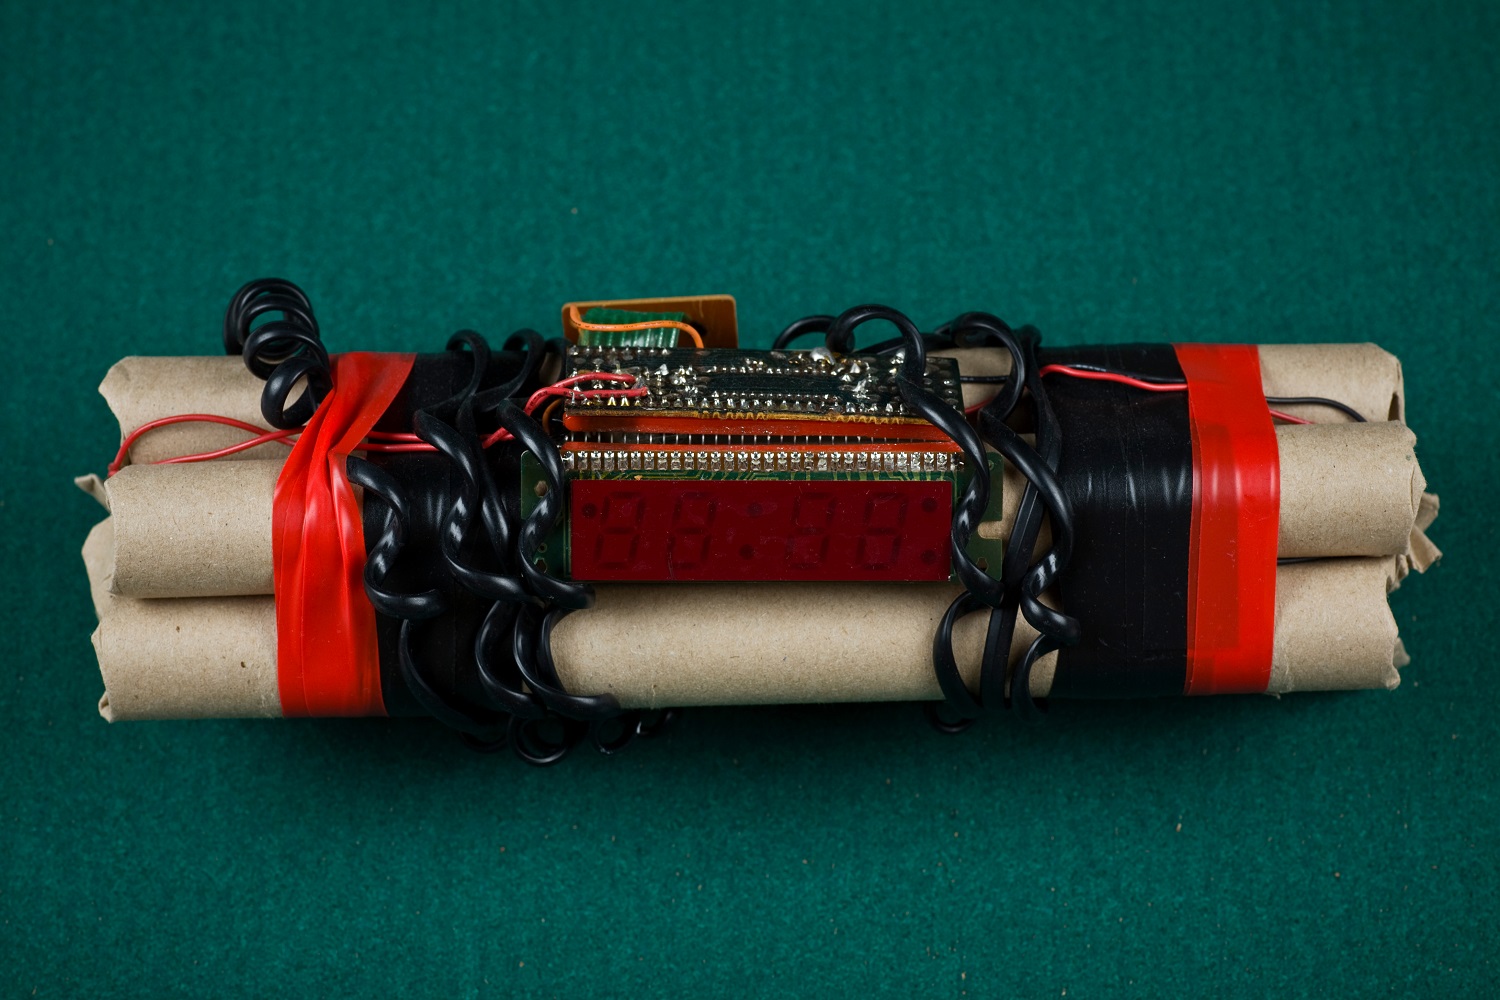 Dinamit çubukları, dijital zamanlayıcı, teller ve koli bandı içeren ev yapımı bir bomba.